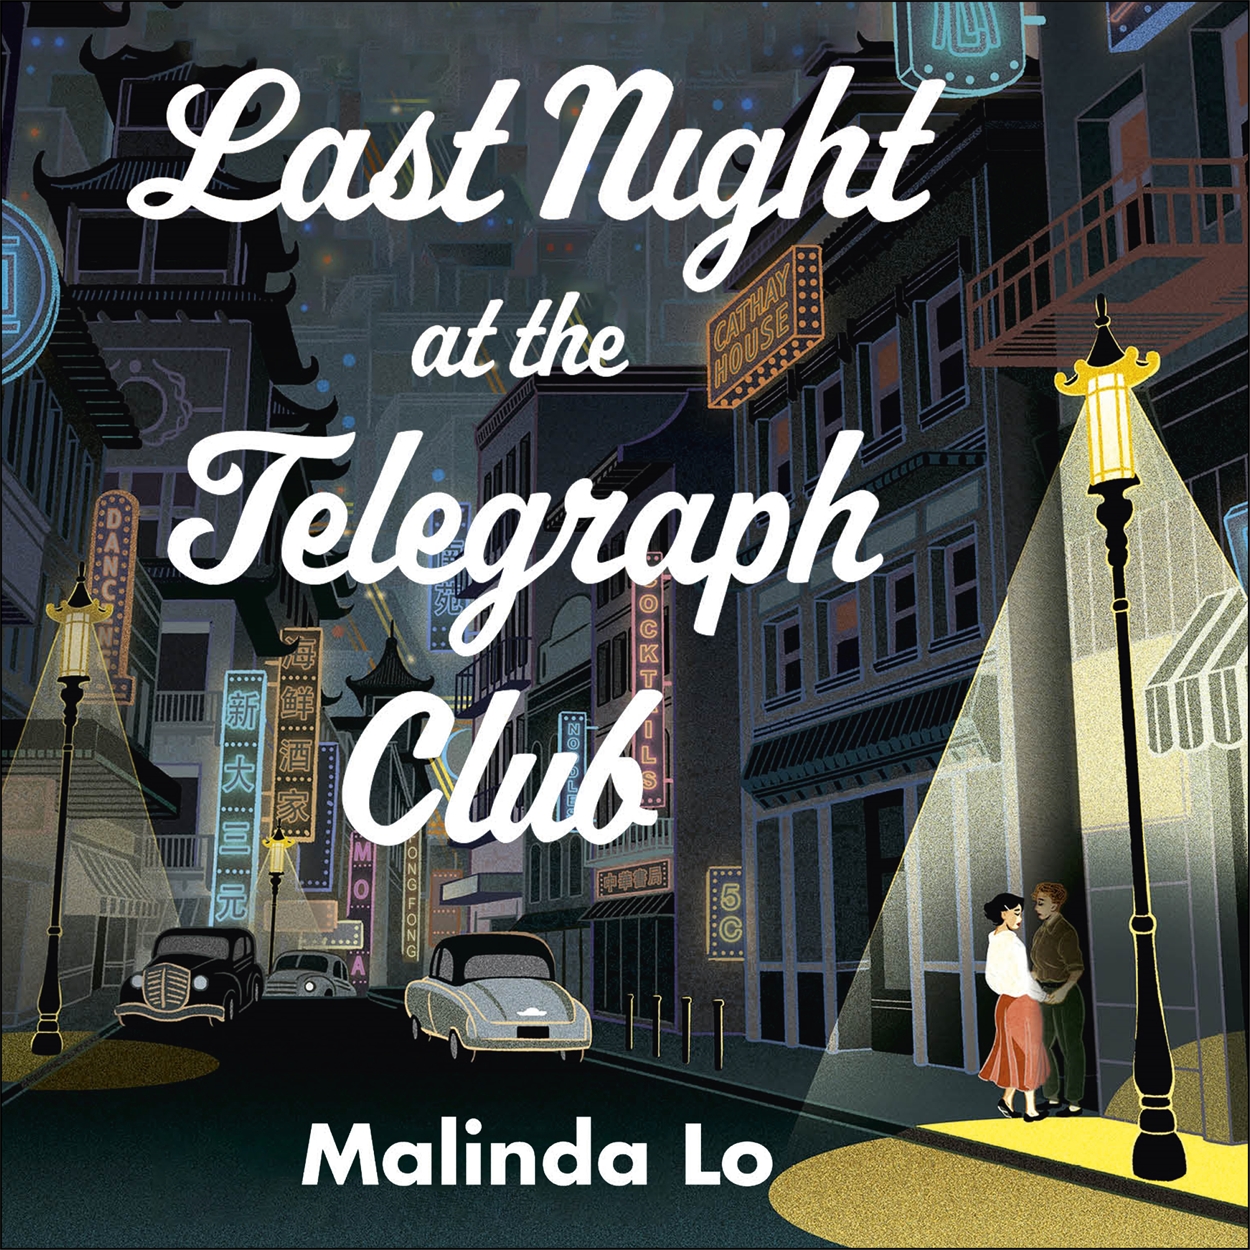 last night telegraph club